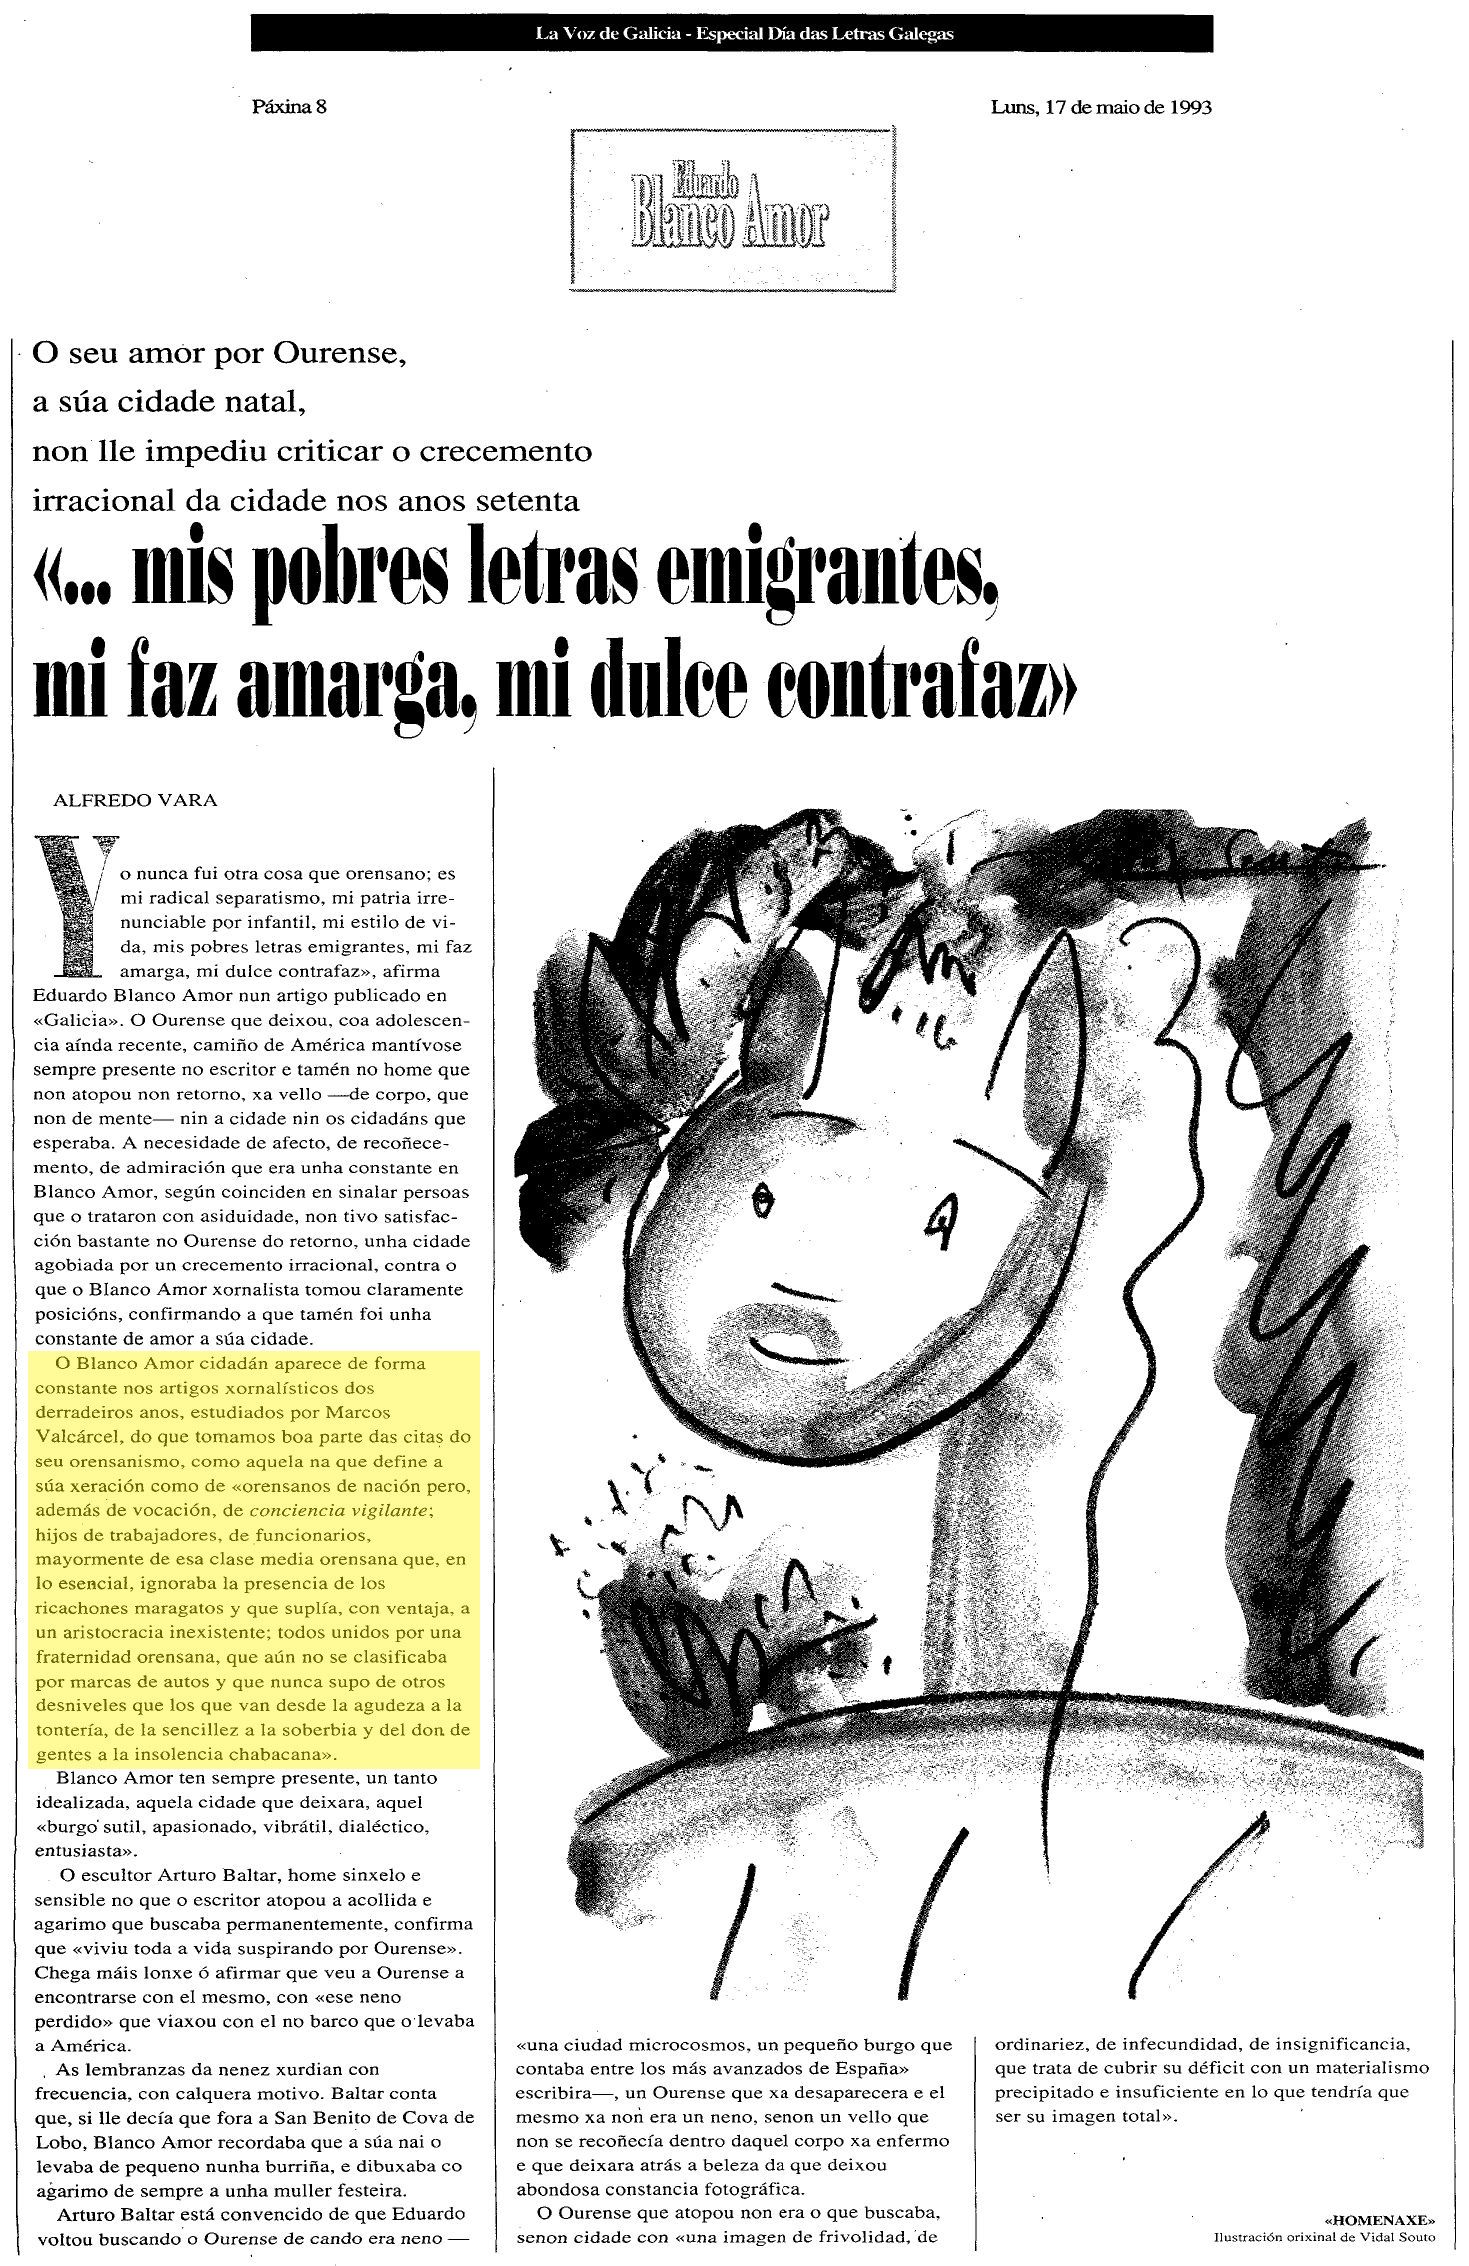 La Voz de Galicia, 17/05/1993 (Especial Día das Letras Galegas)